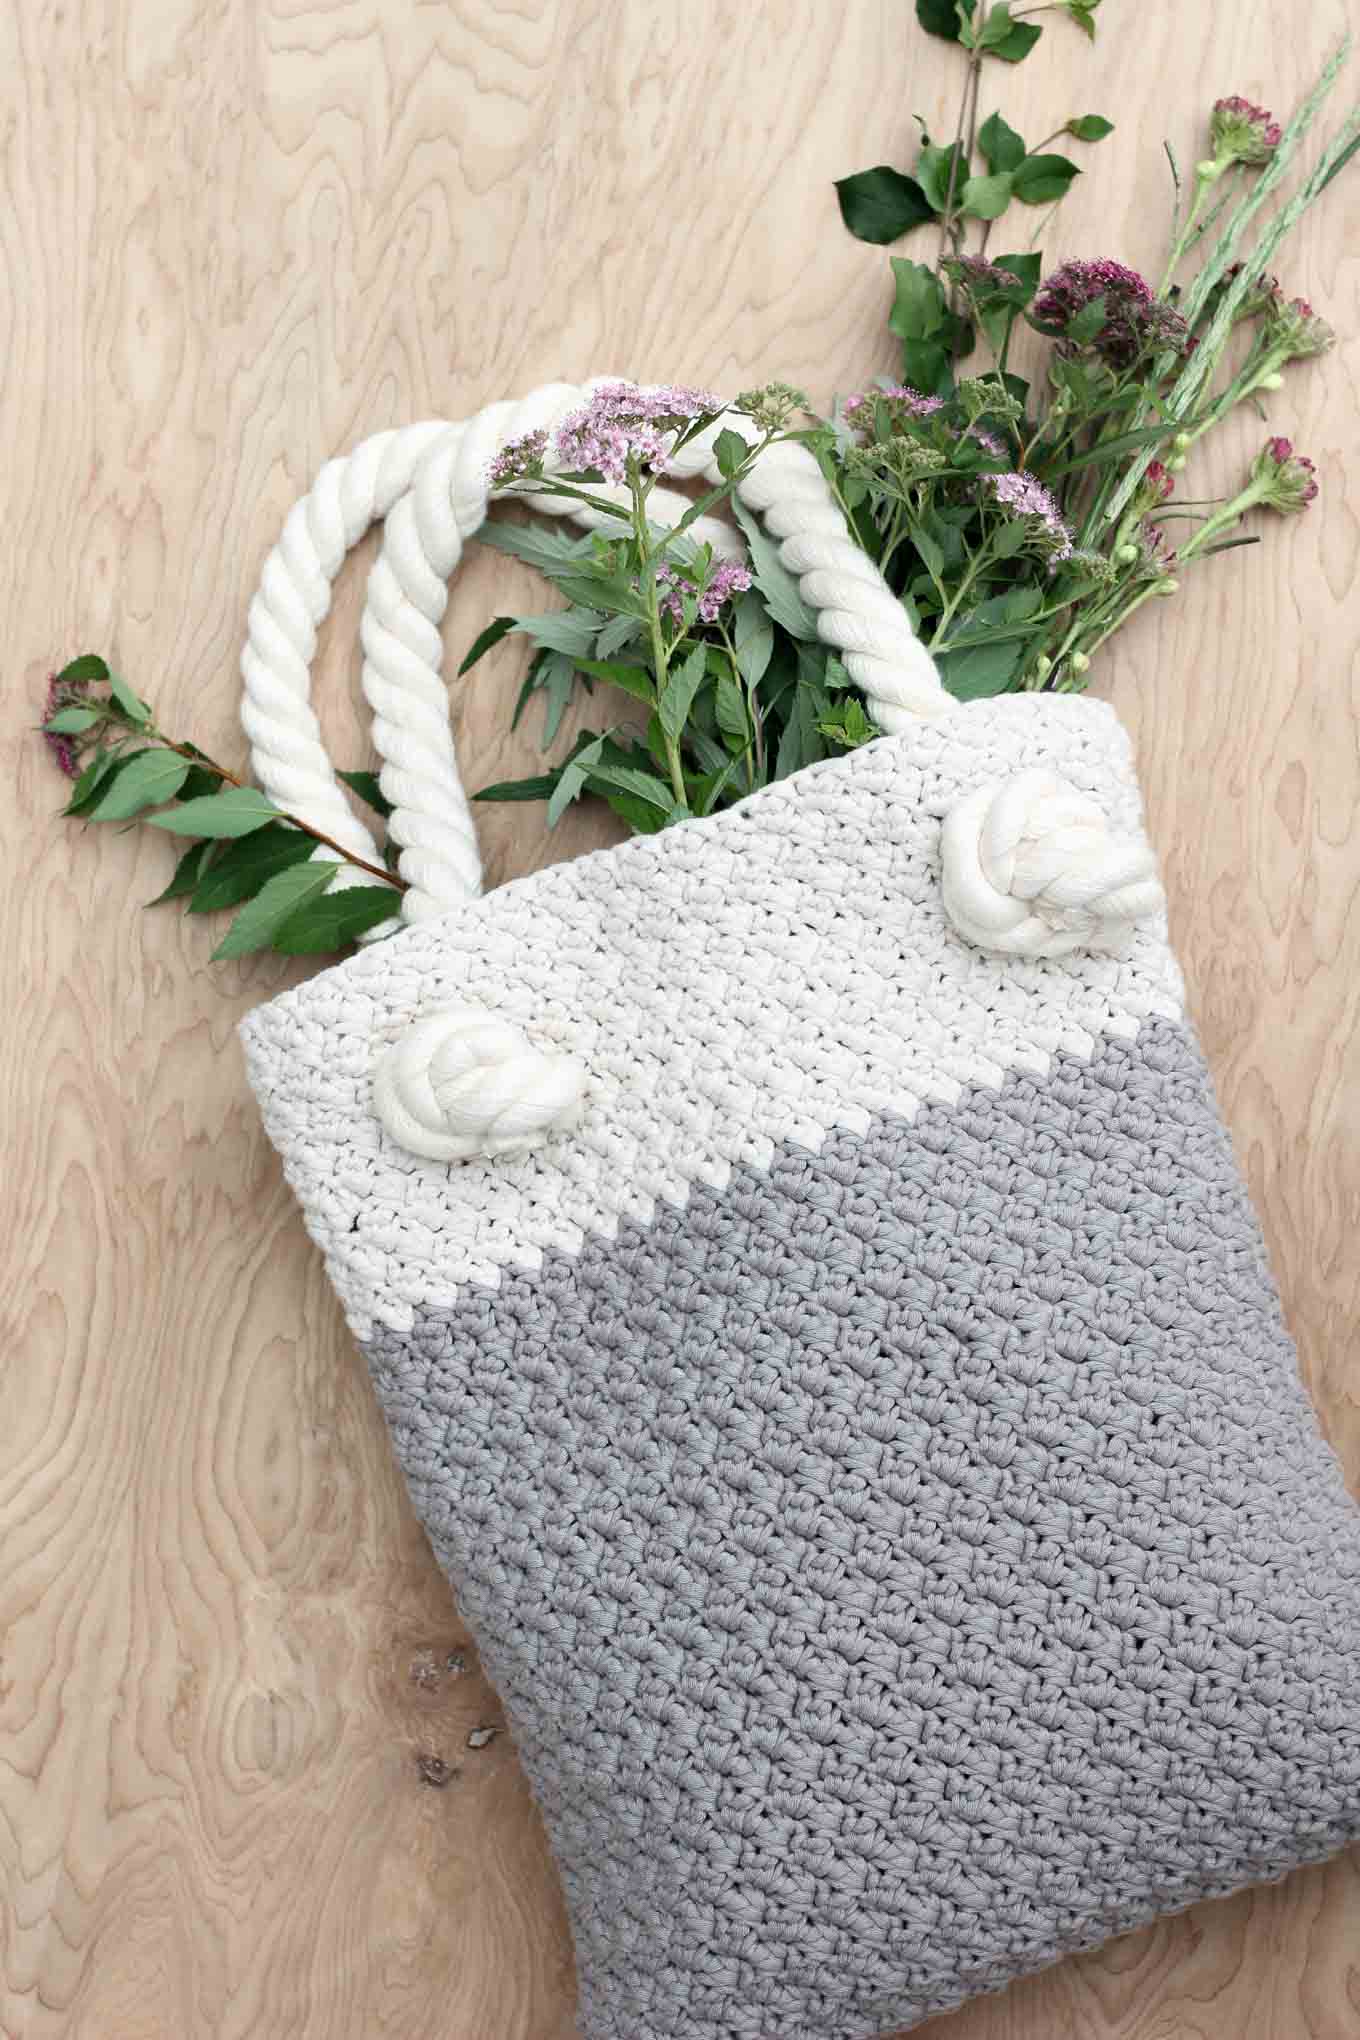 To Make the Crochet Bag - Knittting Crochet